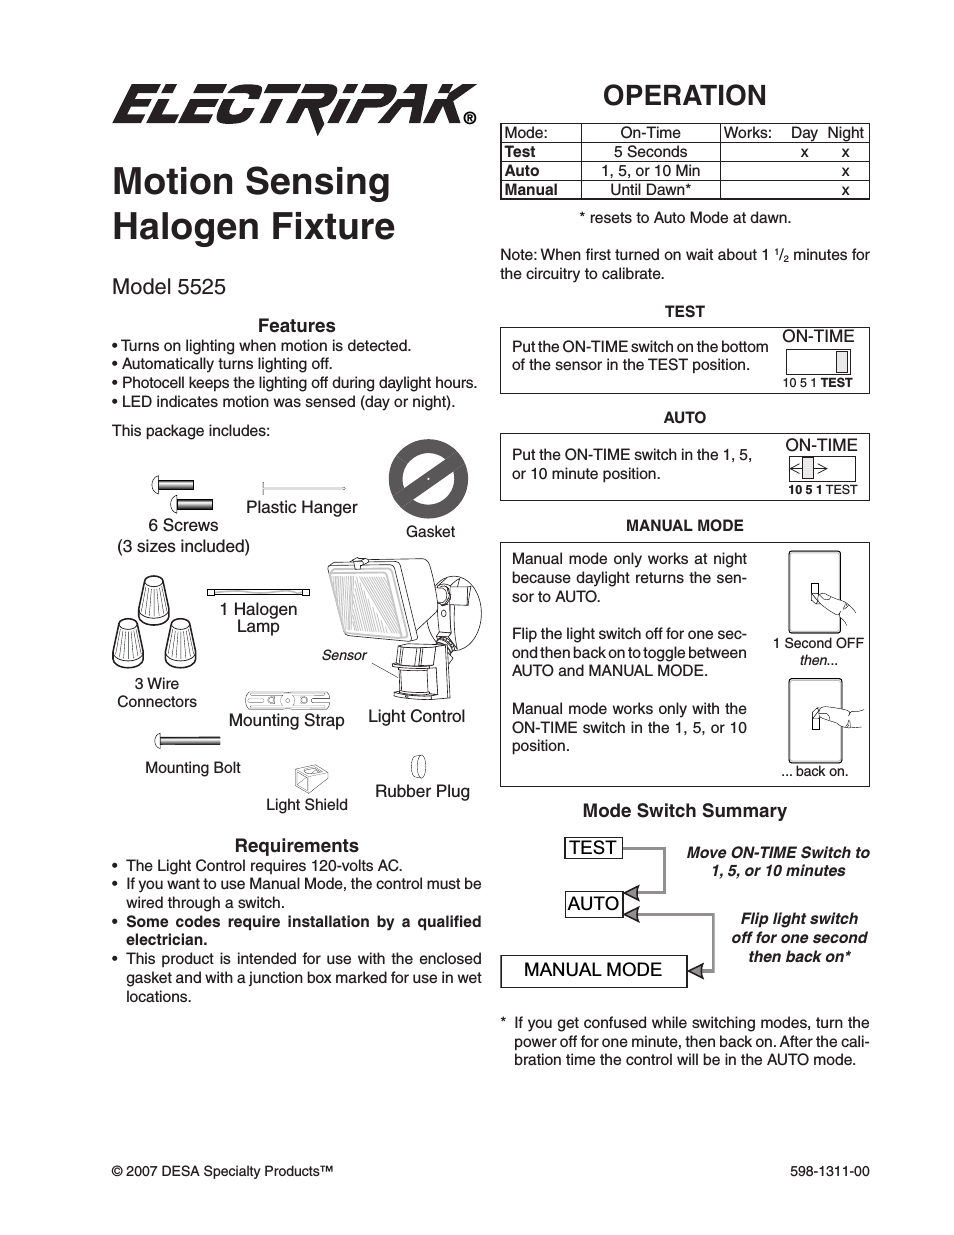 Motion Sensing Halogen Fixture 5525